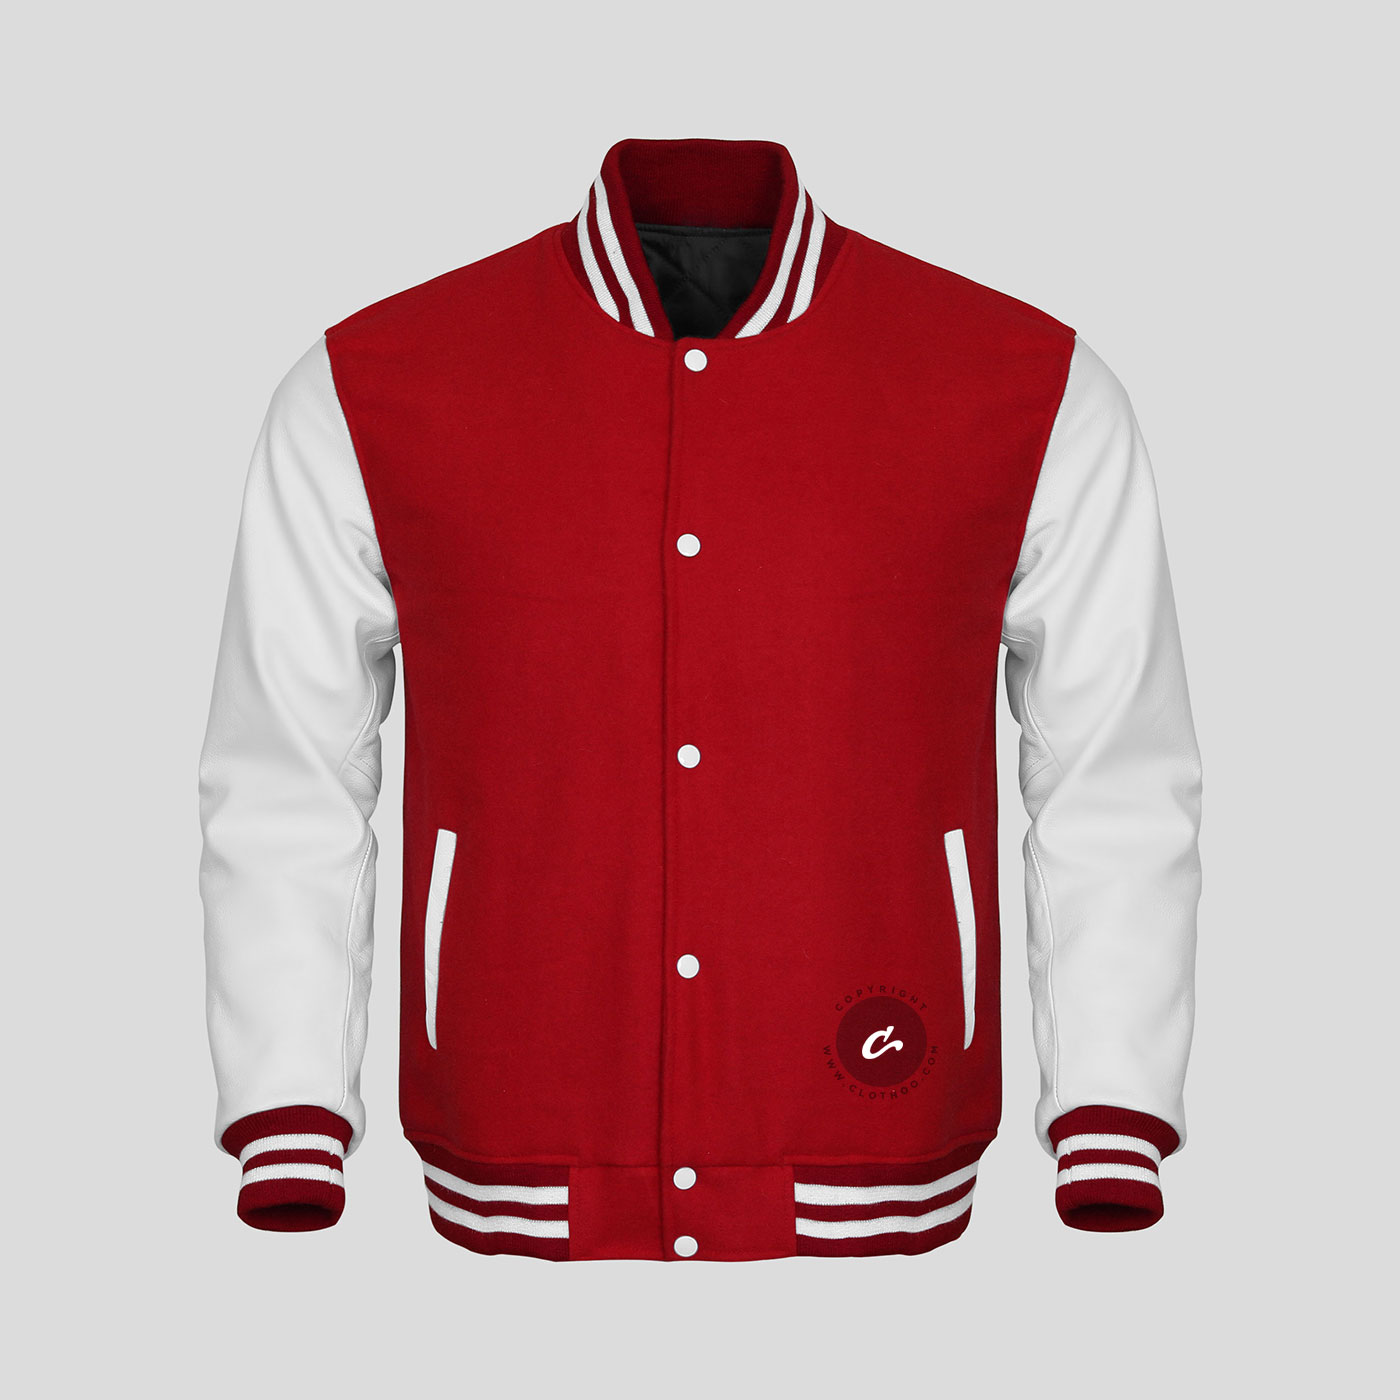 Buy Varsity Jackets | Buy Letterman Jackets | Clothoo